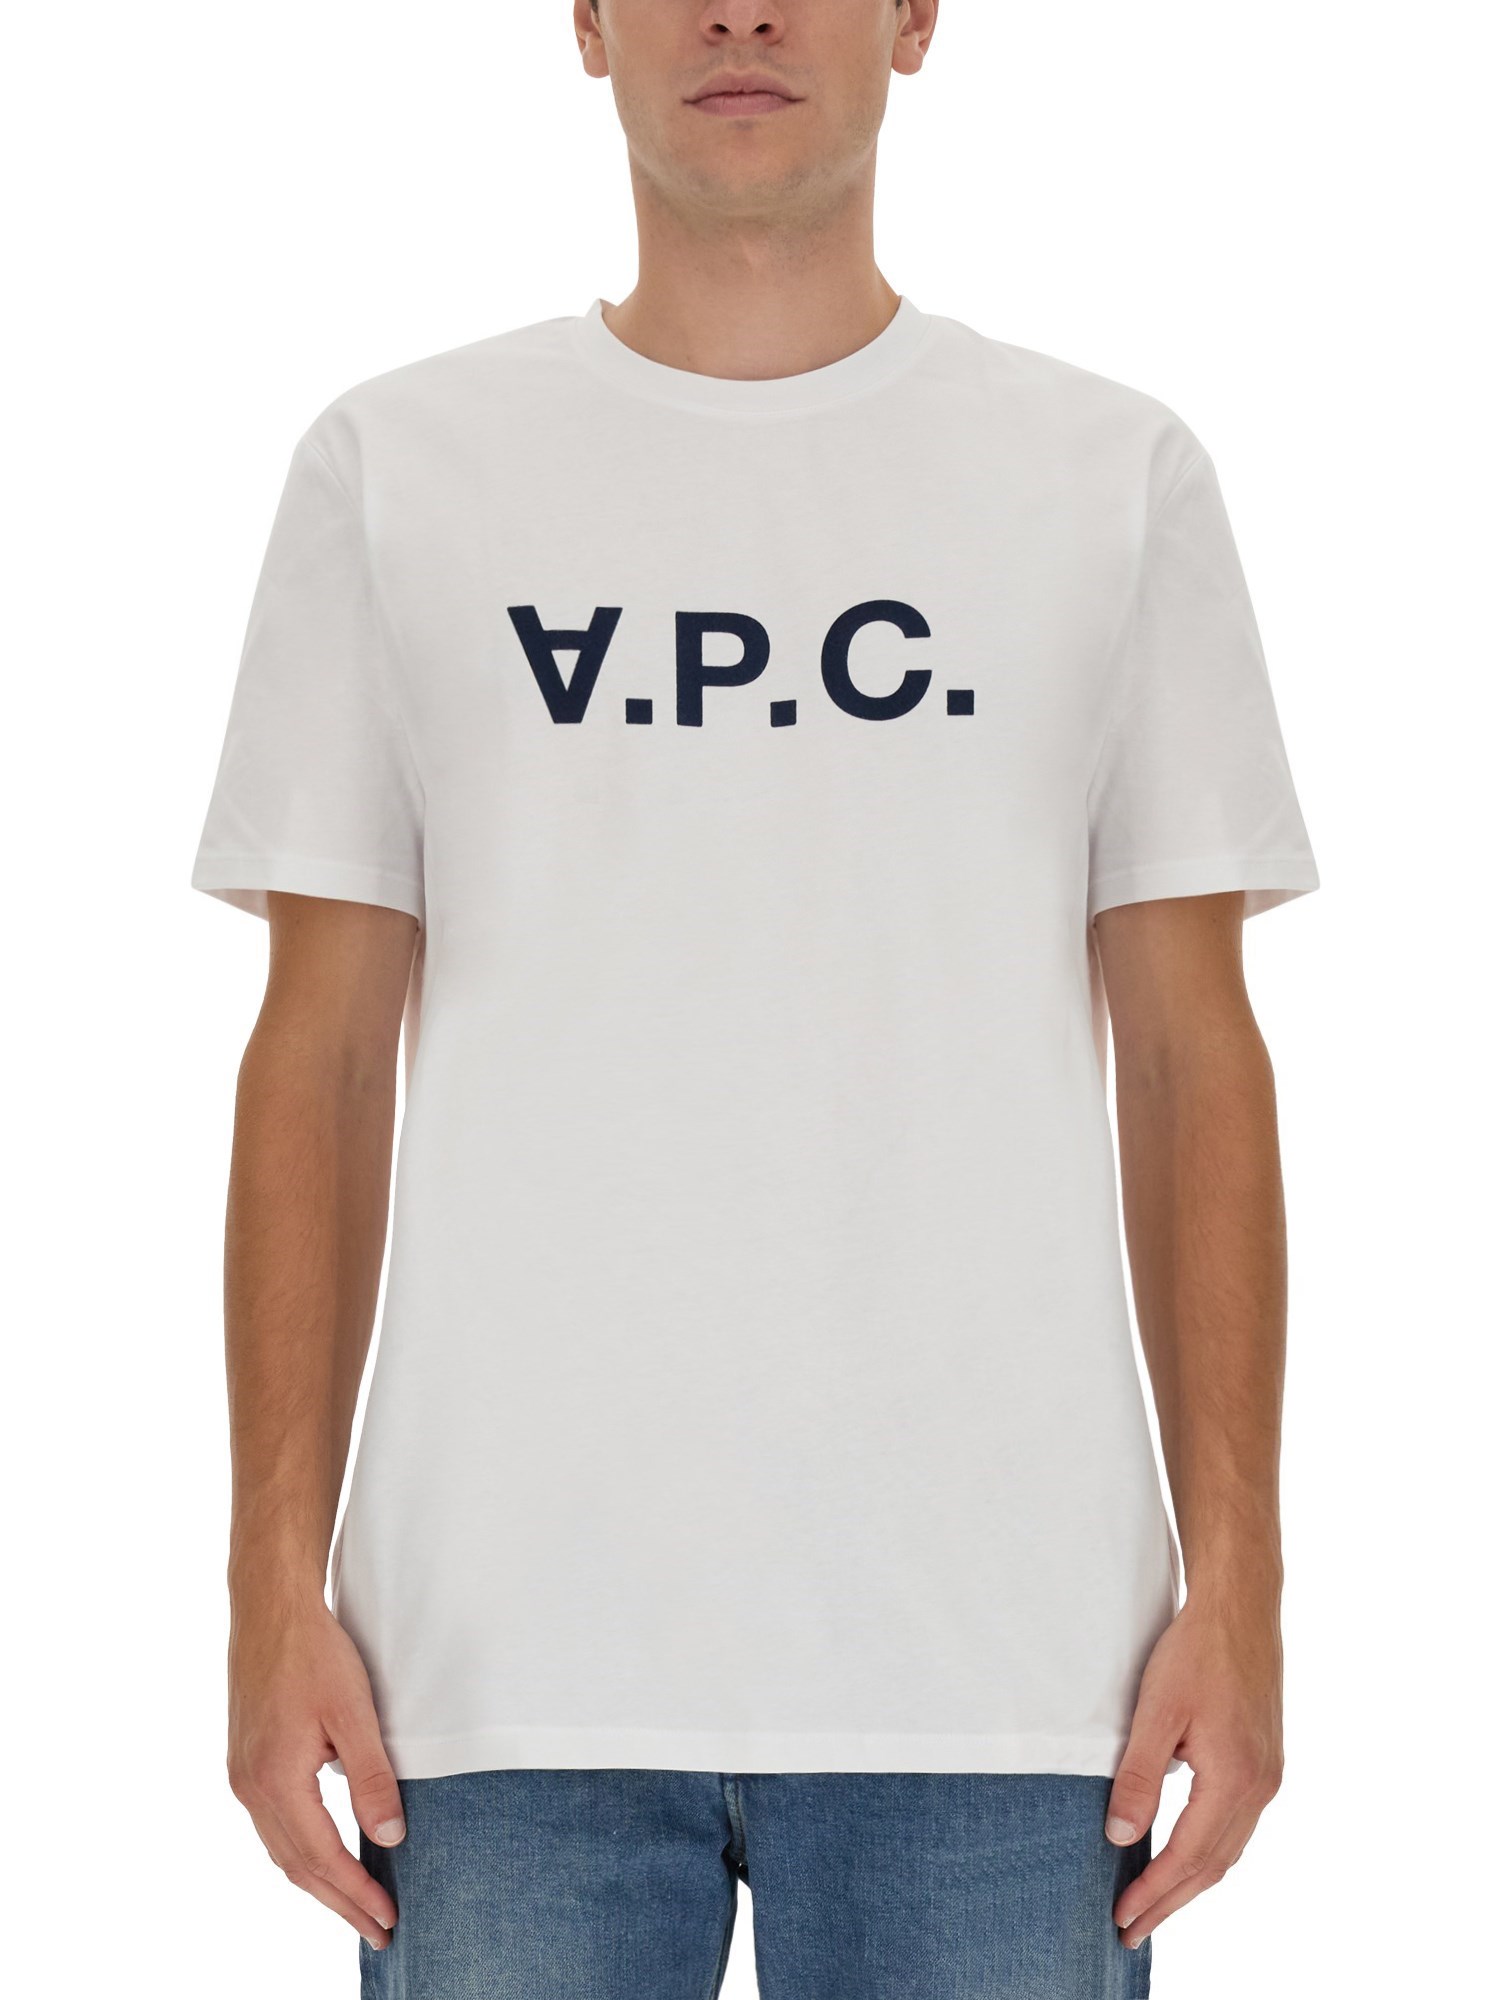 a.p.c. t-shirt with v.p.c logo